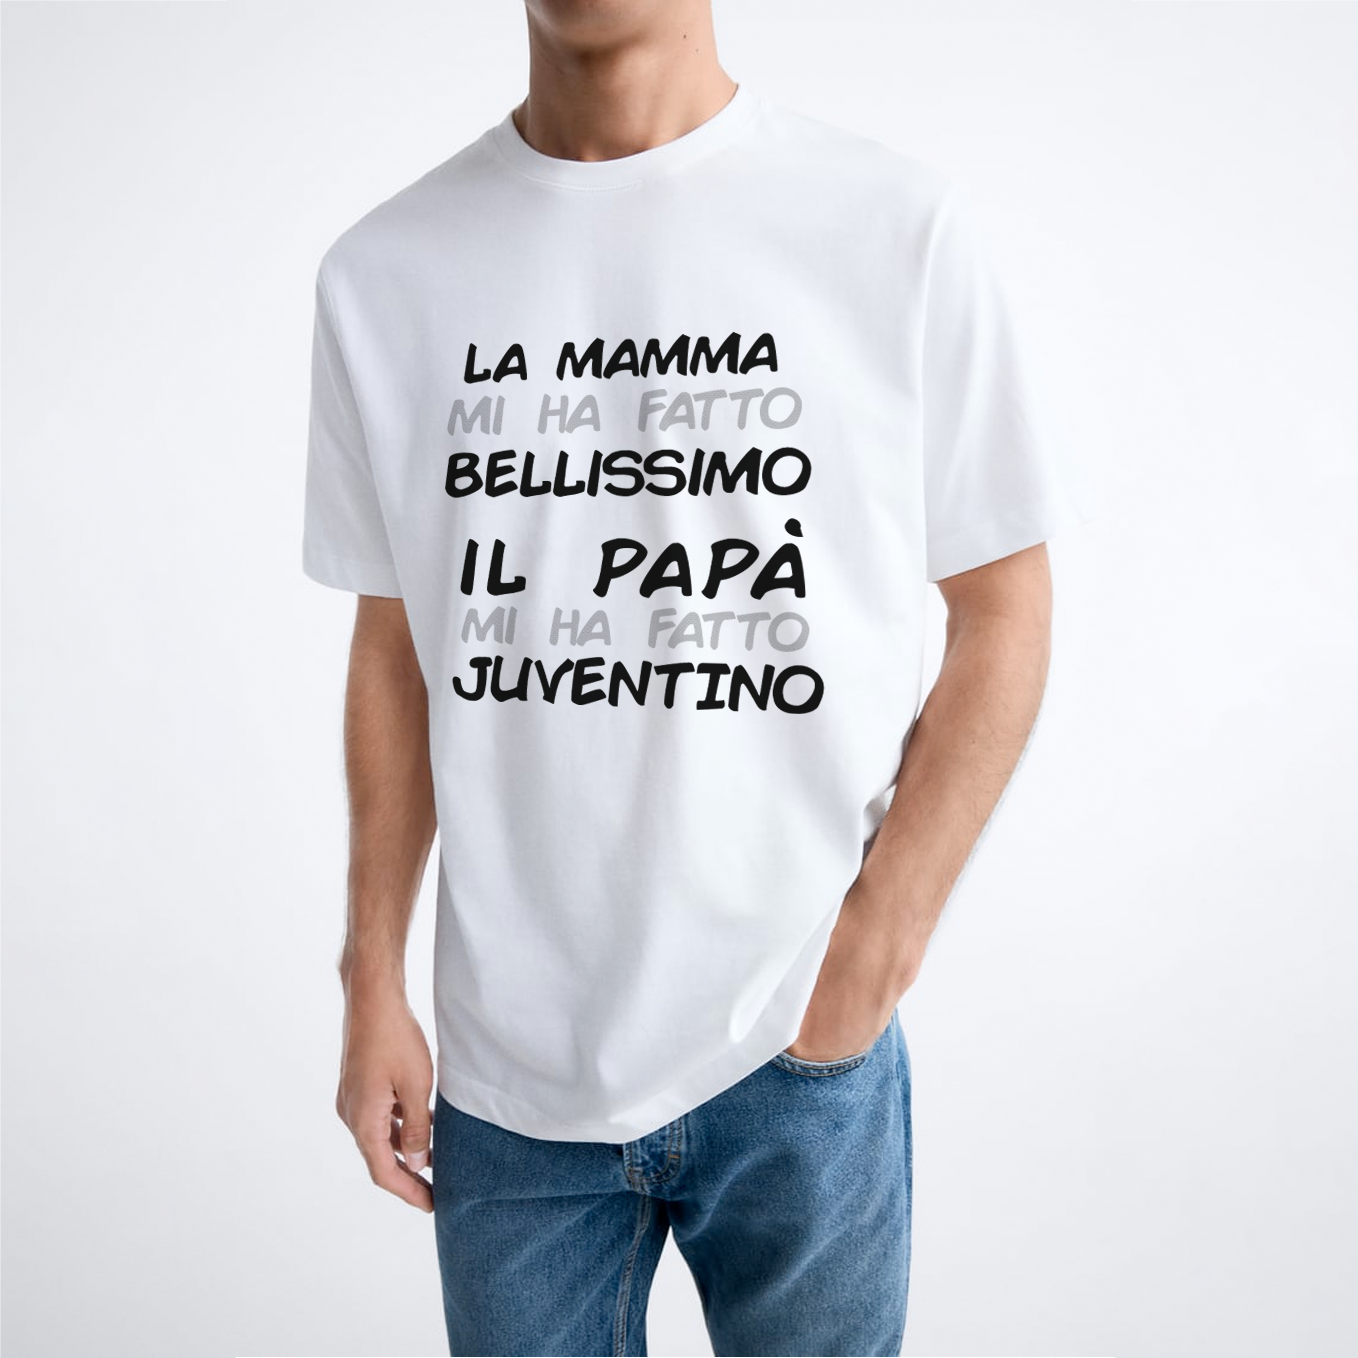 T-shirt "Il papà mi ha fatto Juventino"